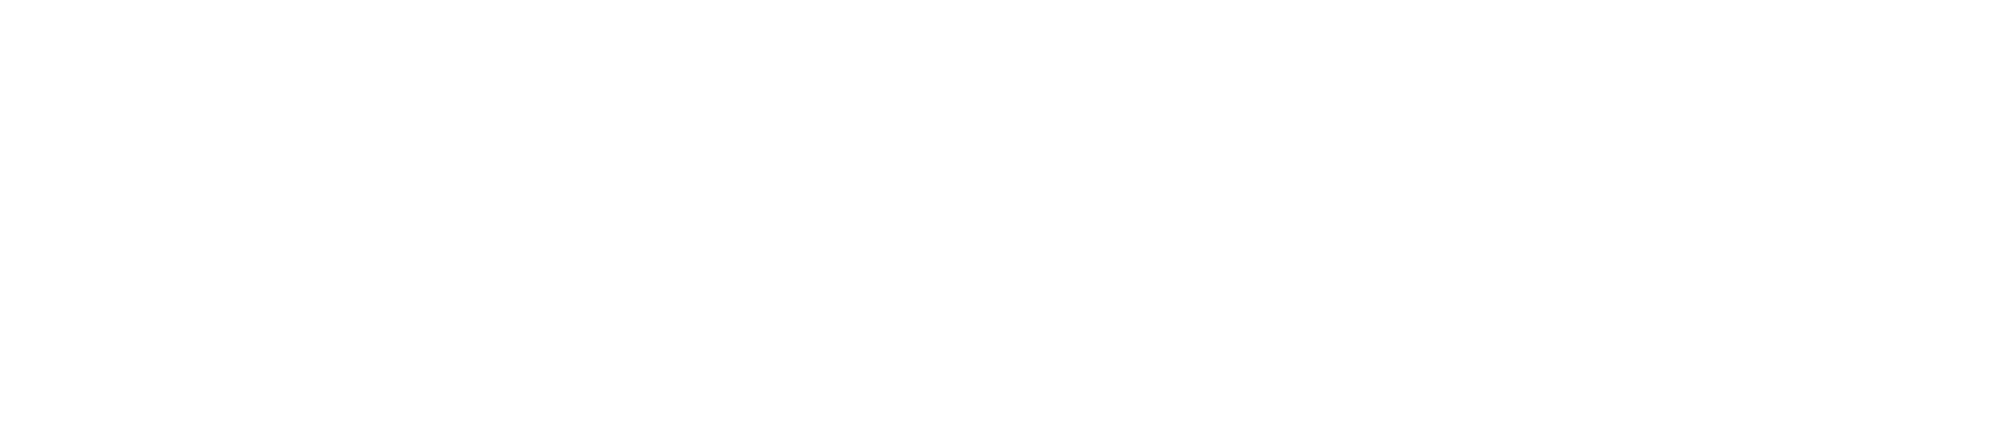 Bridges of Colorado